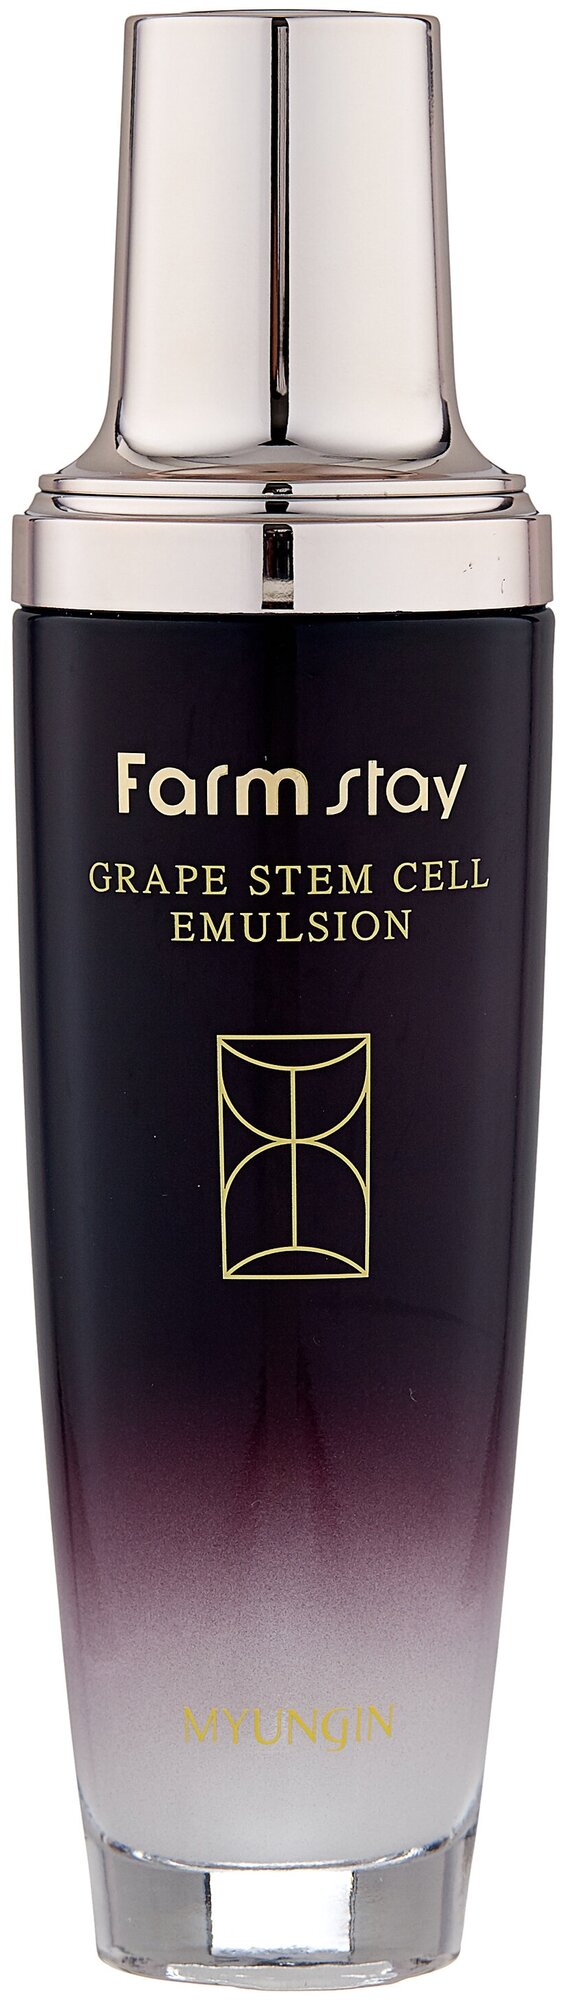 Farmstay Grape Stem Cell Emulsion Эмульсия для лица с фитостволовыми клетками винограда, 130 мл